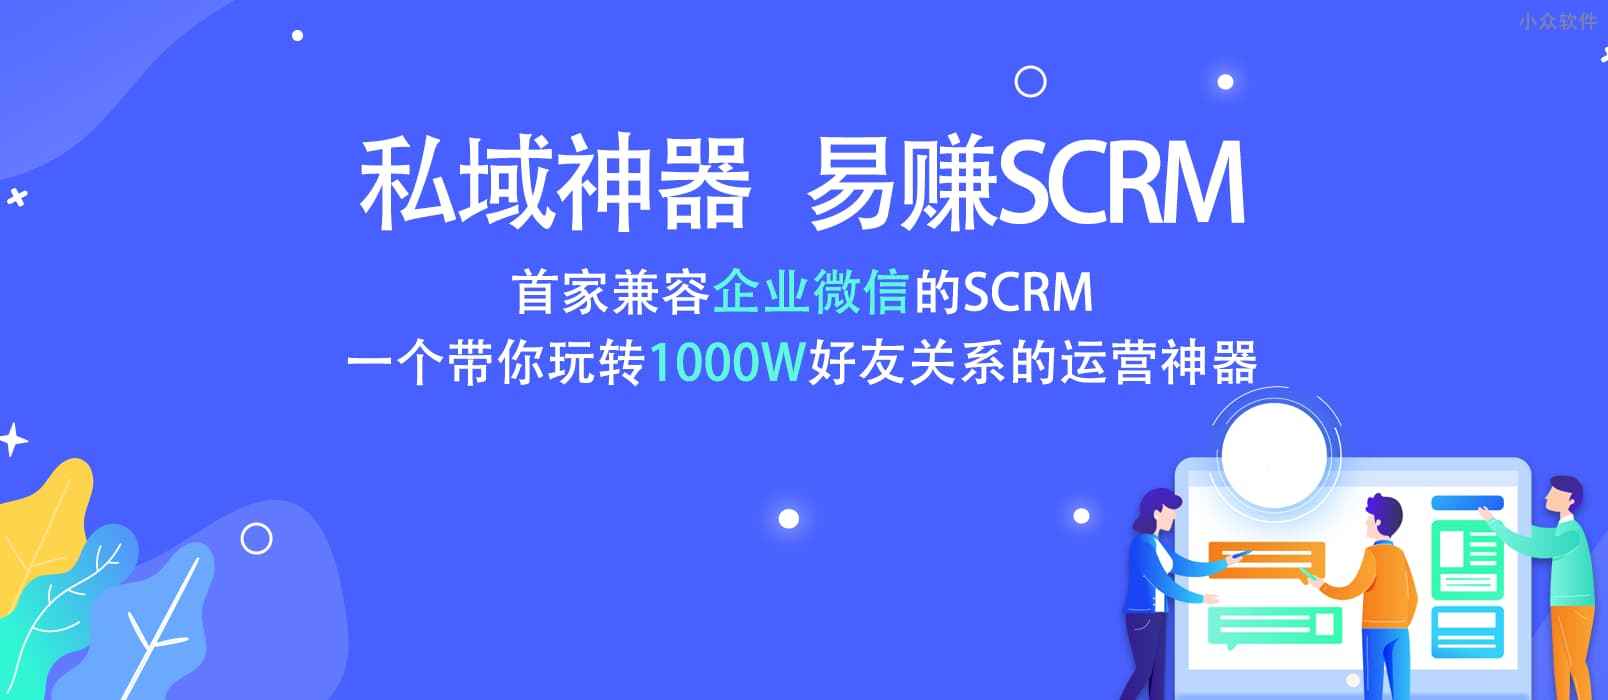 易赚SCRM-首家基于企业微信的私域流量运营神器 1